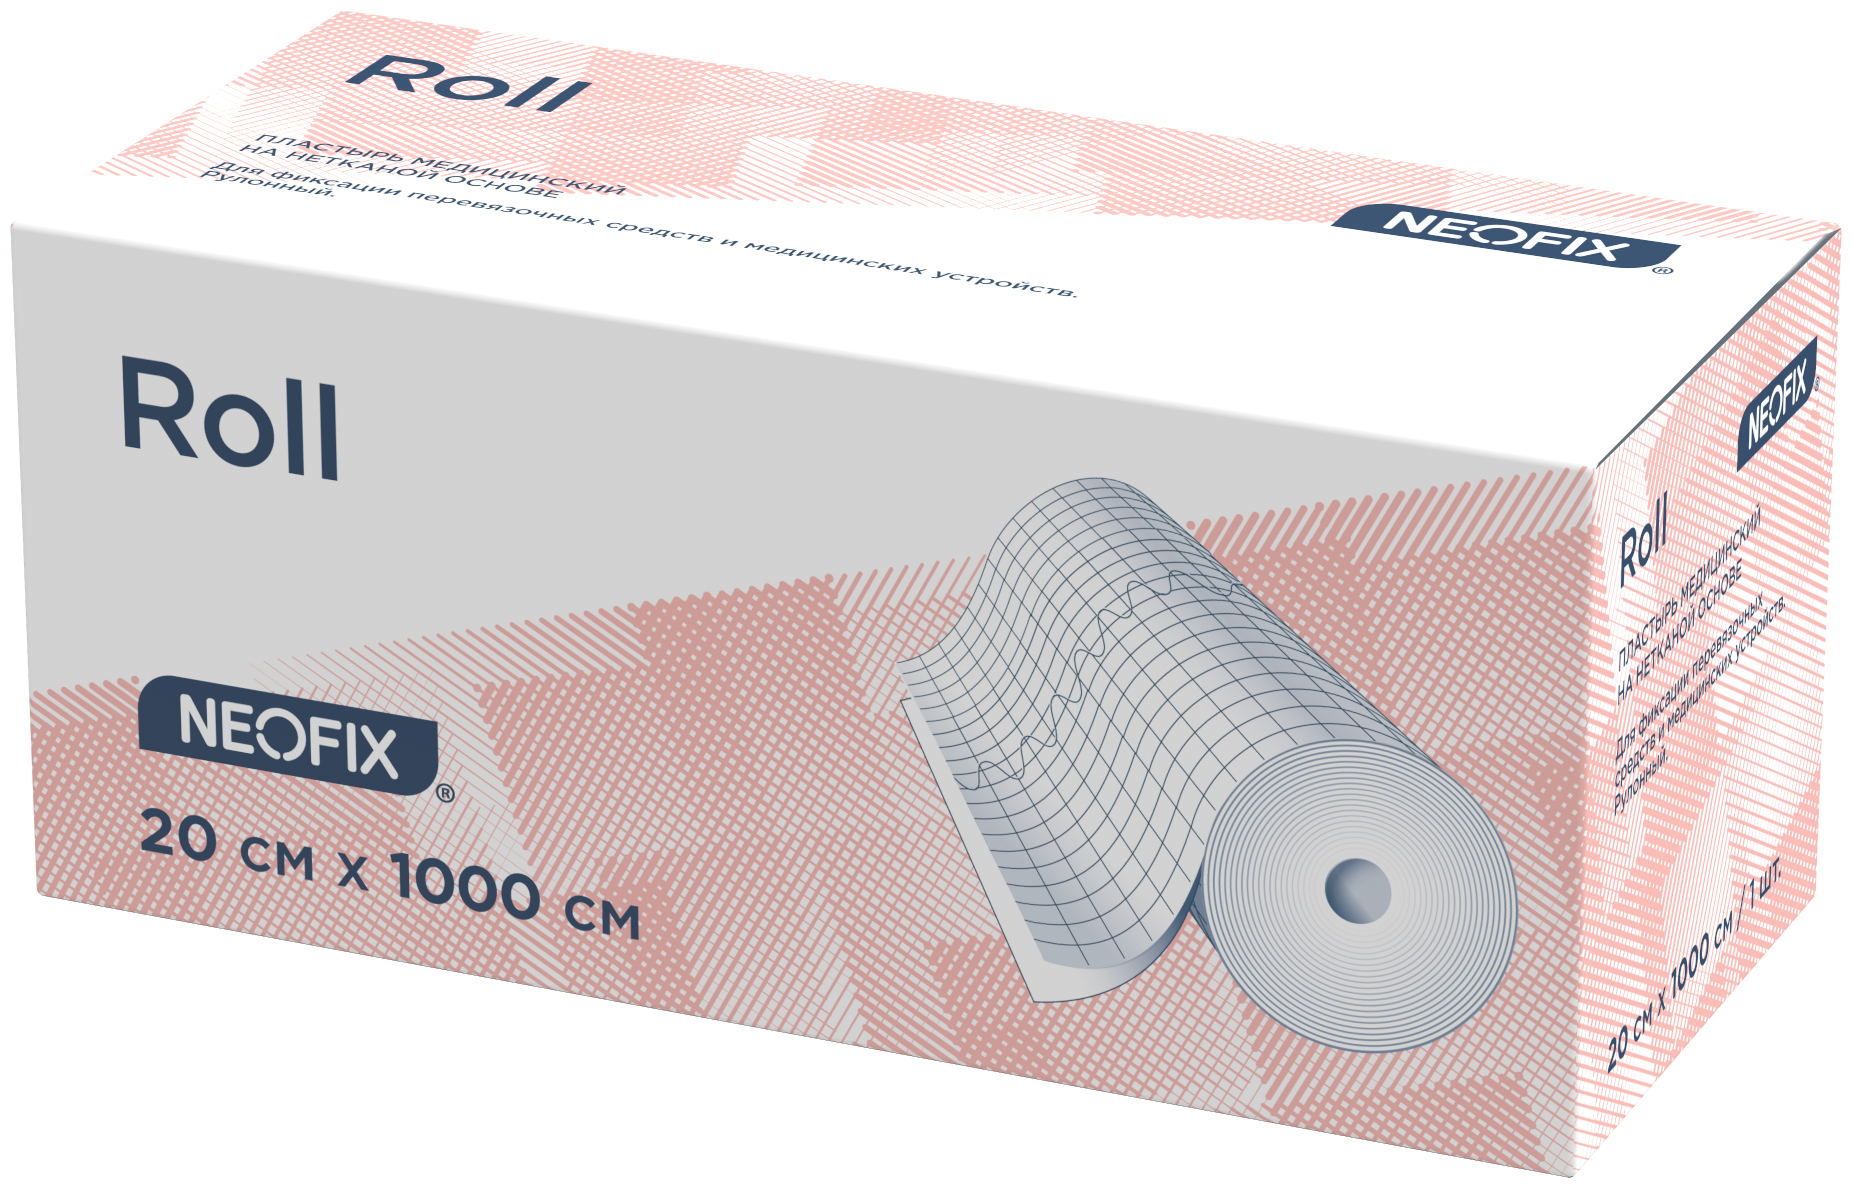 NEOFIX Roll пластырь фиксирующий нестерильный на нетканой основе 20x1000 см